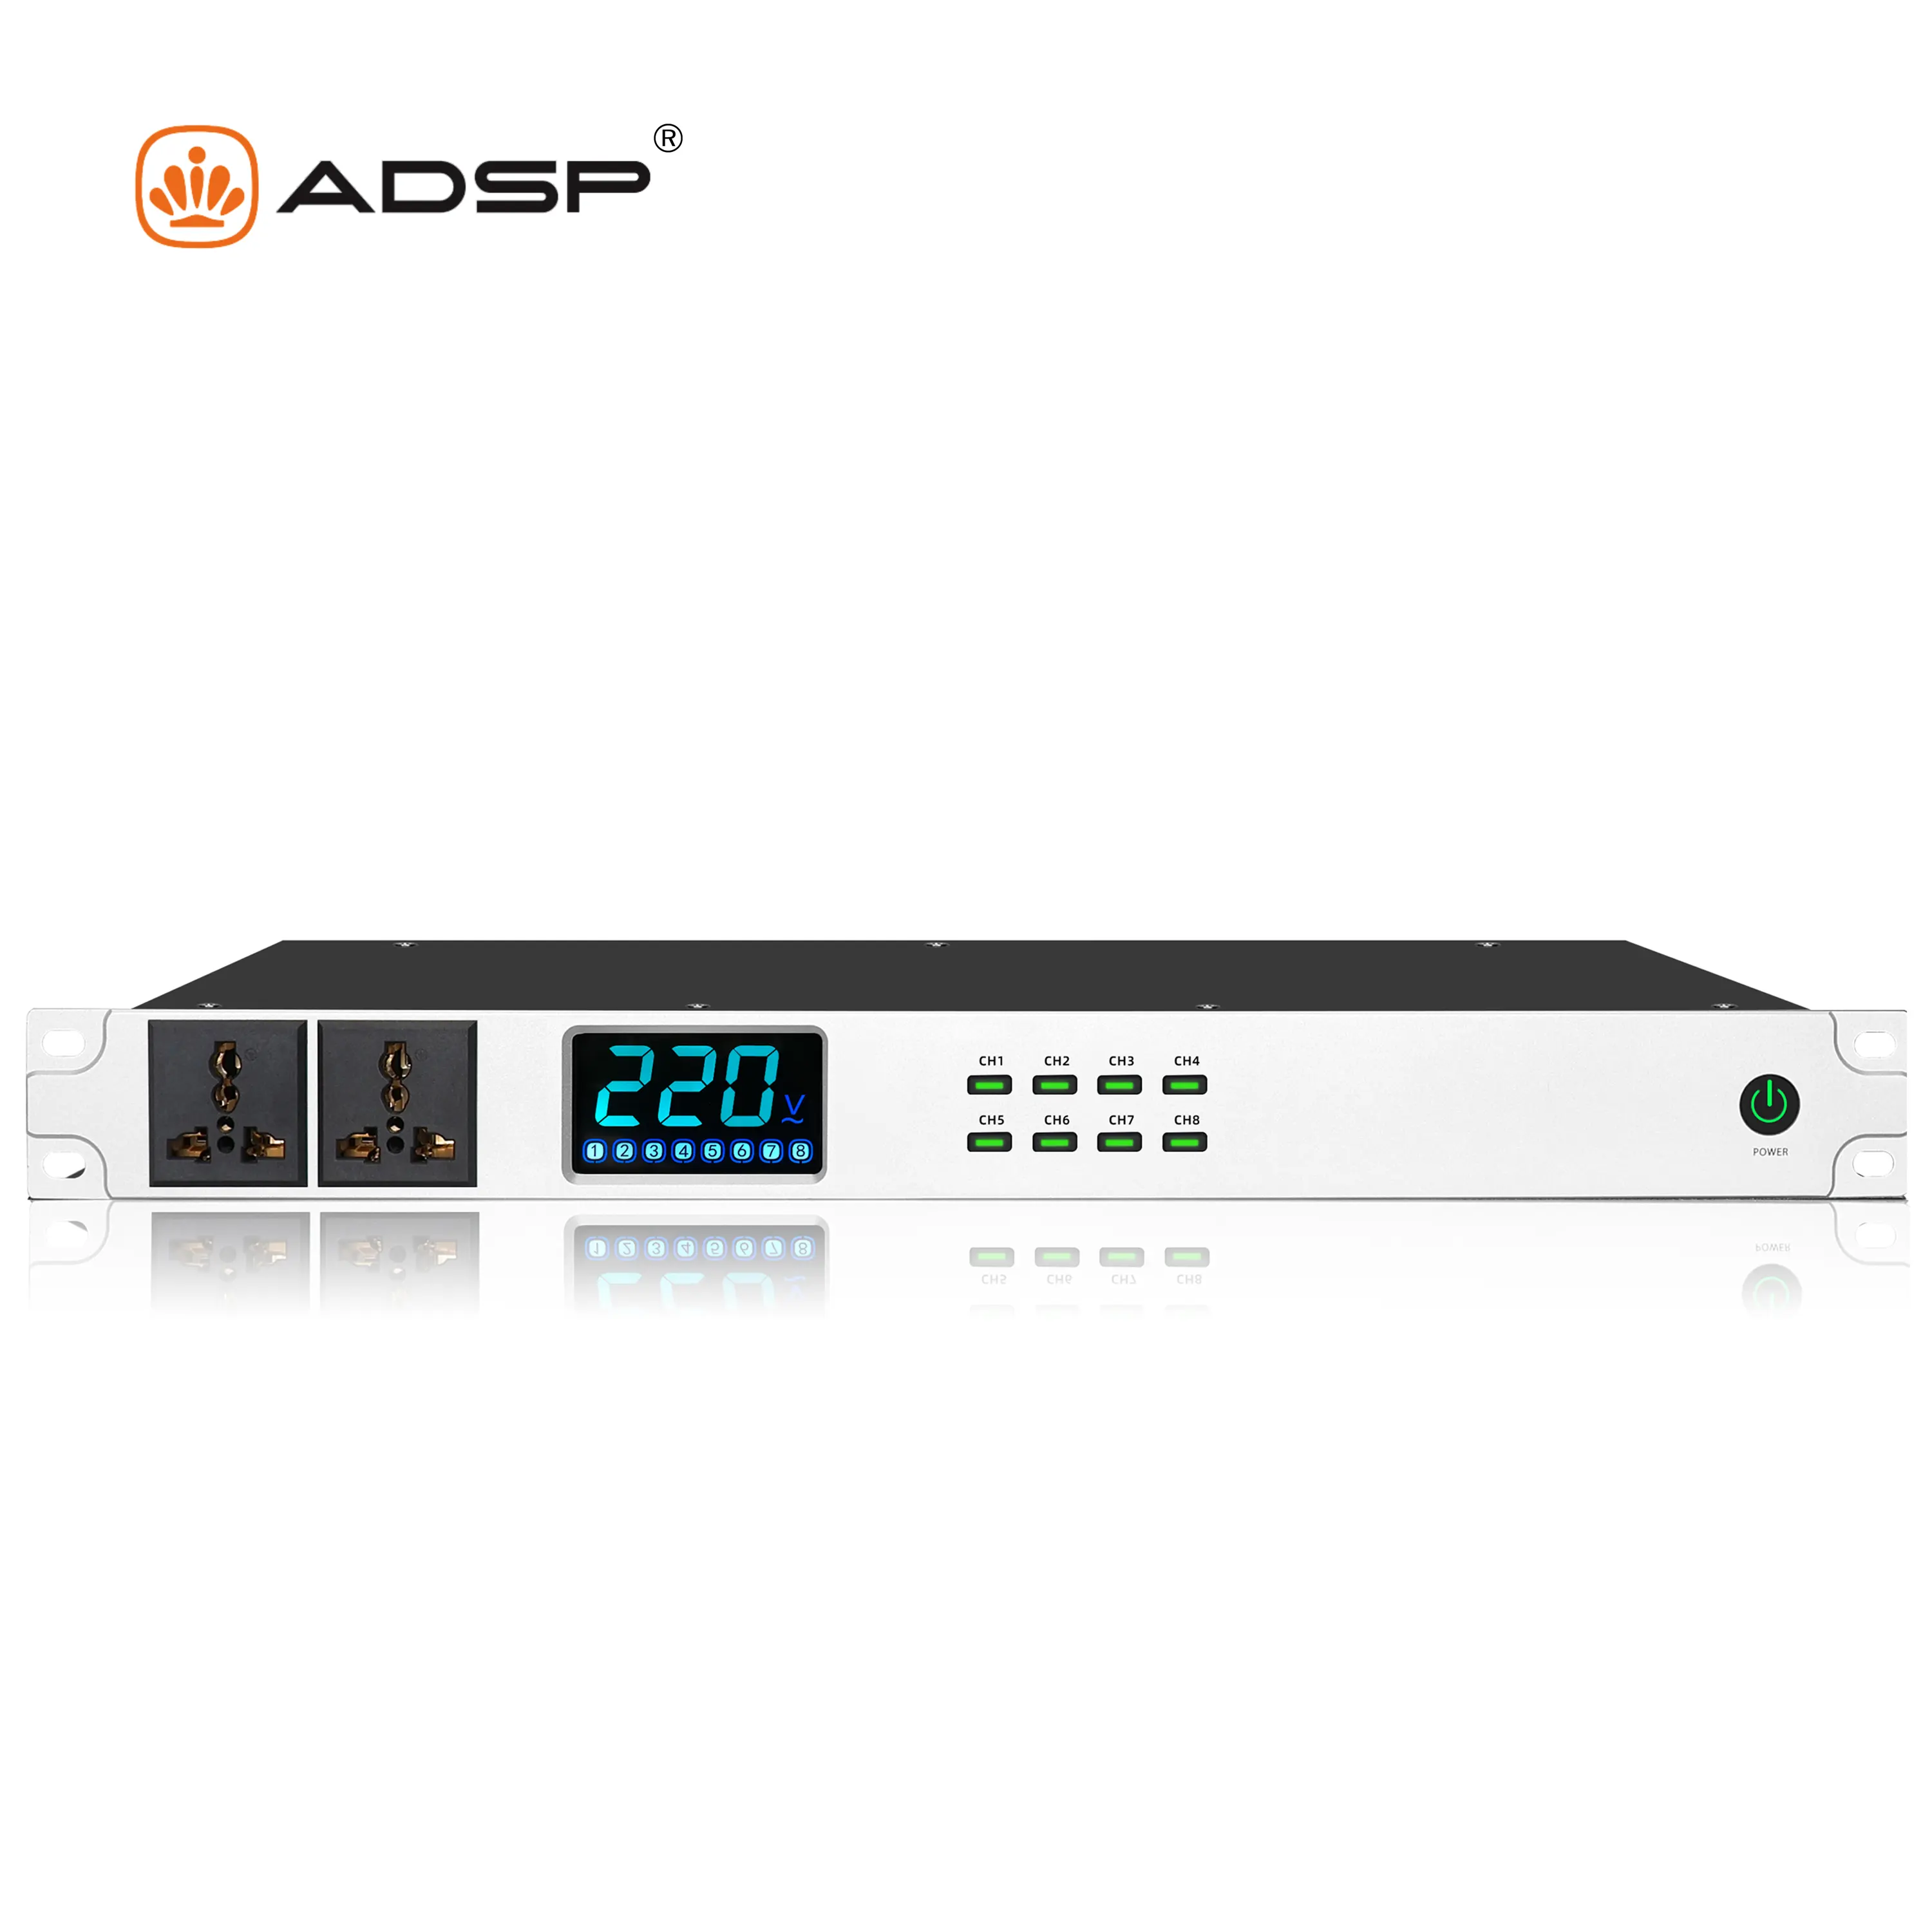 Aode S108 Professional 82チャンネルパワーシーケンサーコントローラー、ディスプレイモニター付きkTVコマーシャルコンサートミーティング用